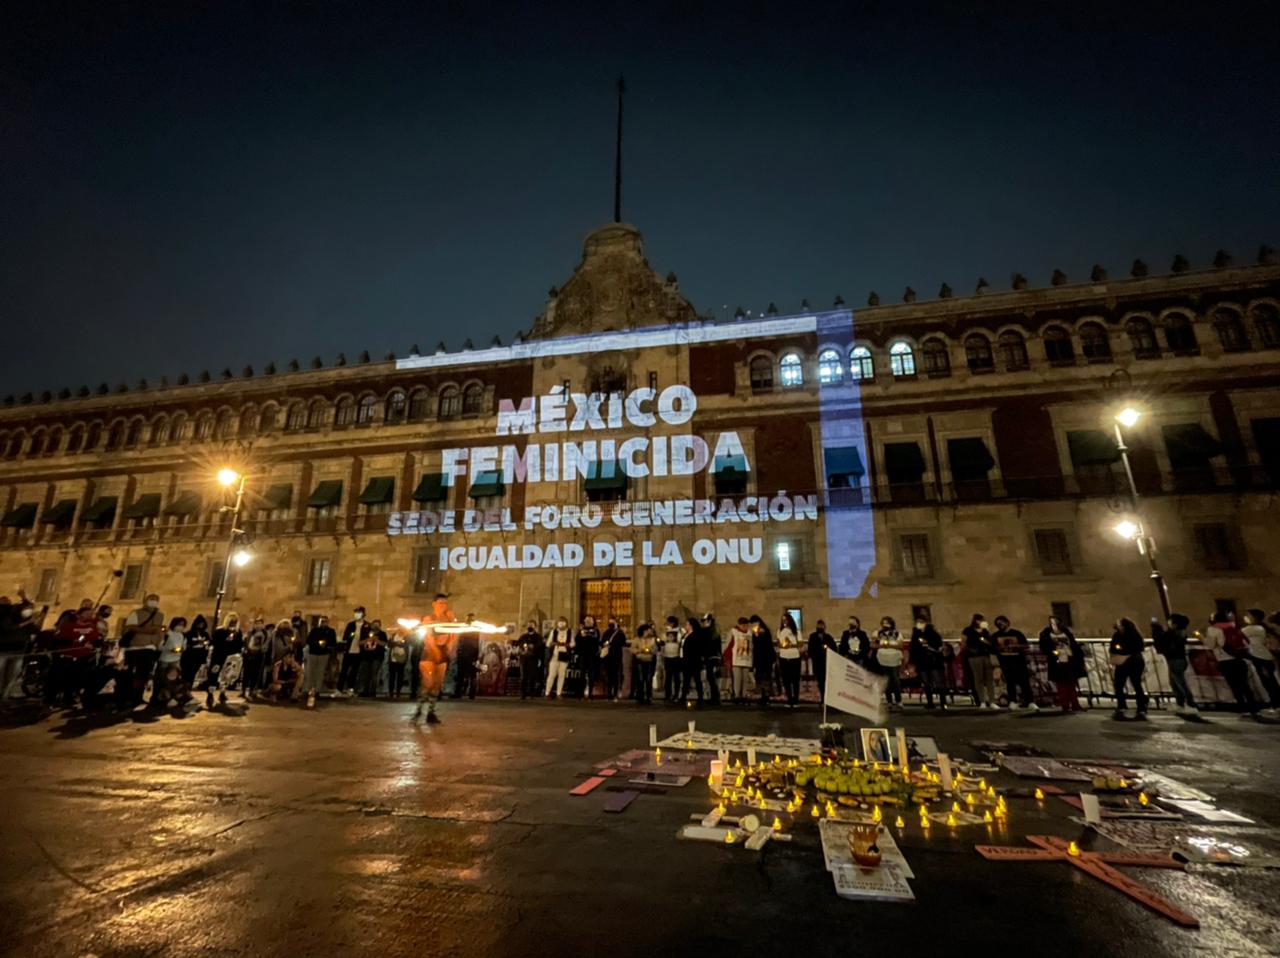 'SOS Nos están matando', la leyenda que se proyectó en Palacio Nacional contra los feminicidios